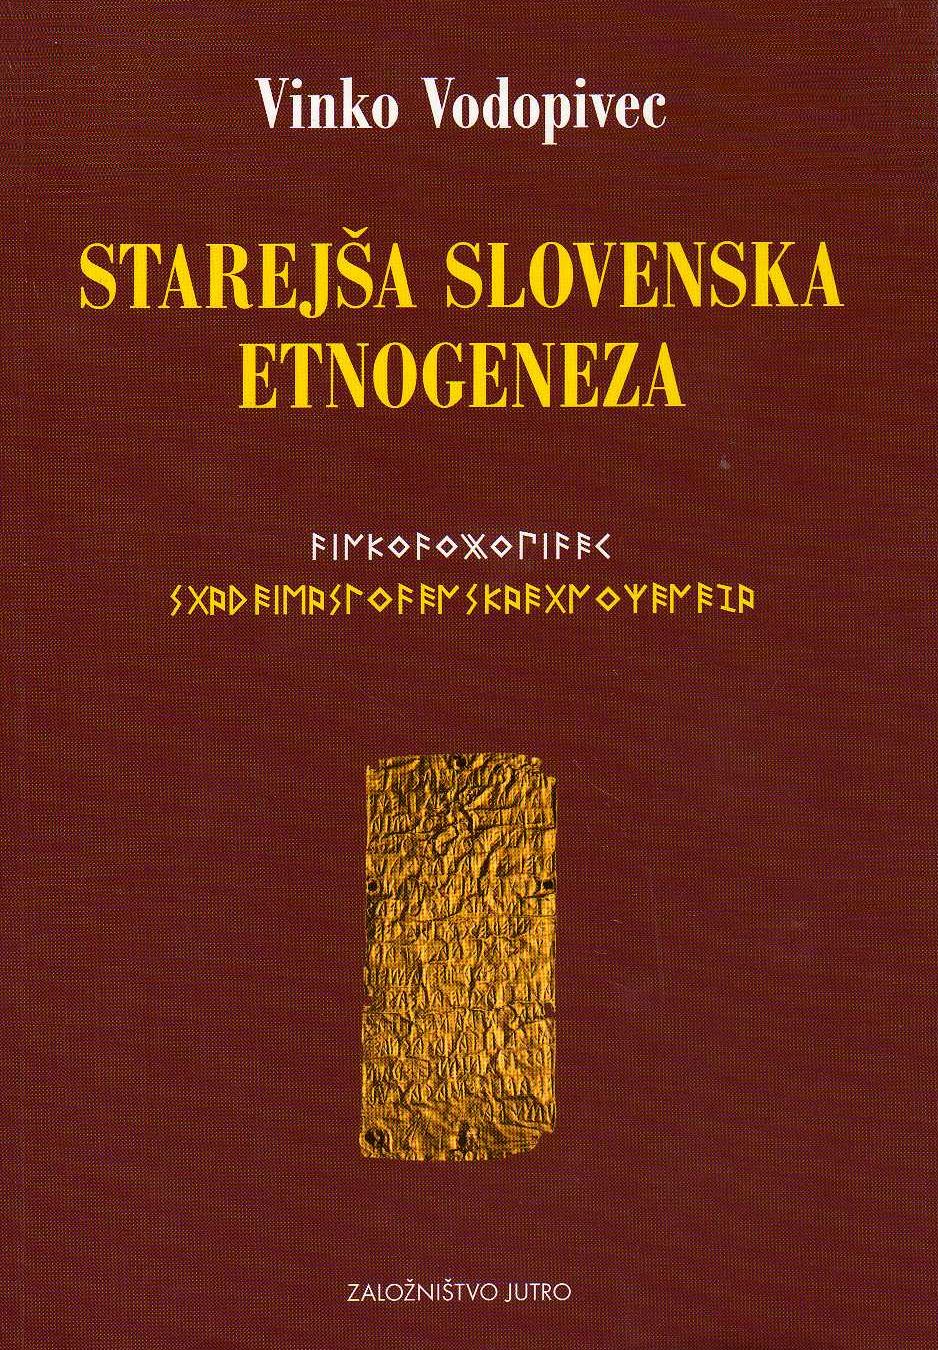 starejsa_slovenska_etnogeneza2.jpg